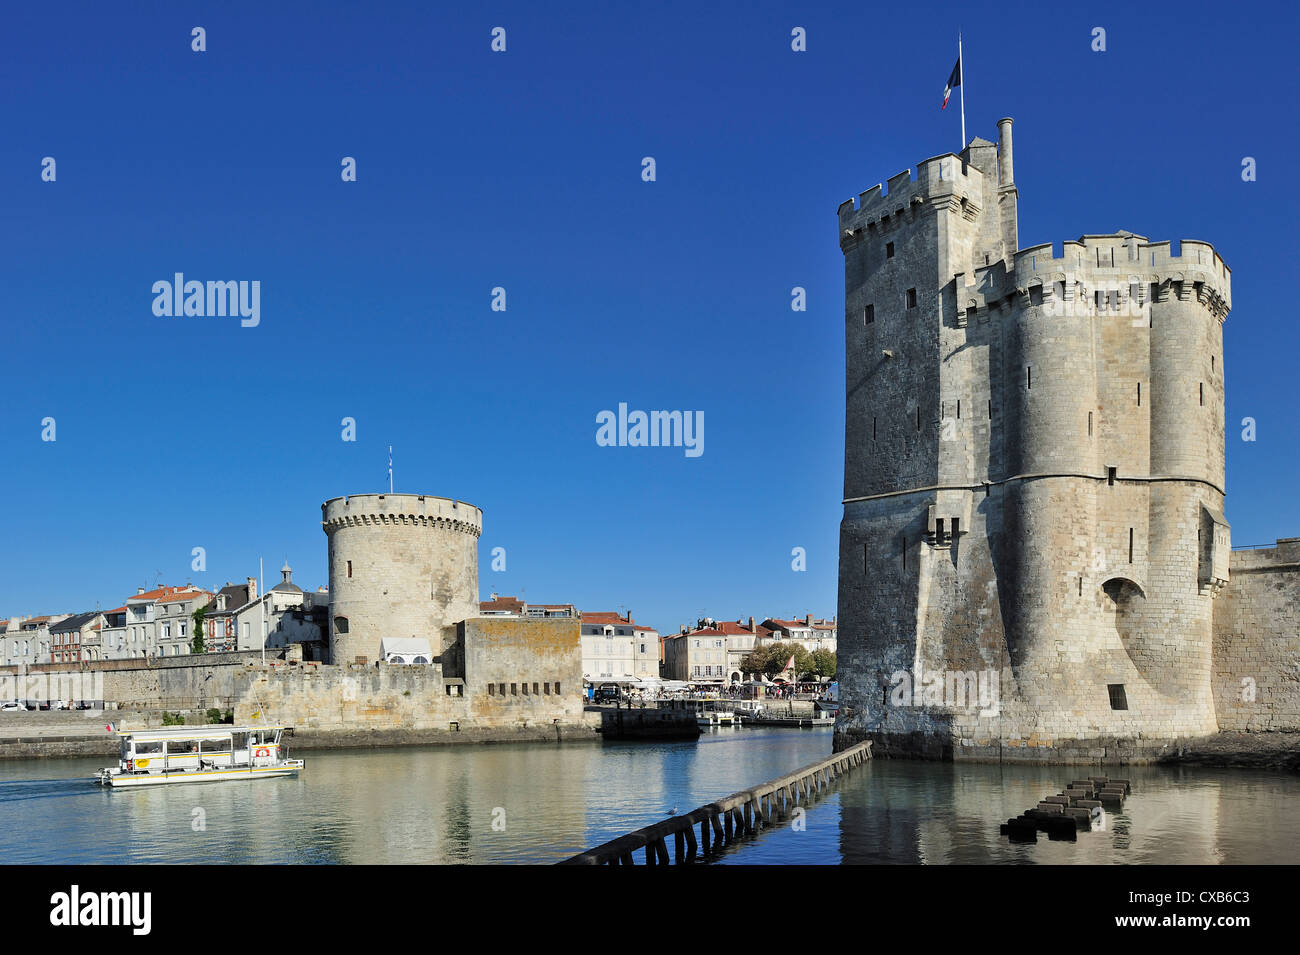 The towers tour de la Chaîne and tour Saint-Nicolas in the old harbour / Vieux Port at La Rochelle, Charente-Maritime, France Stock Photo